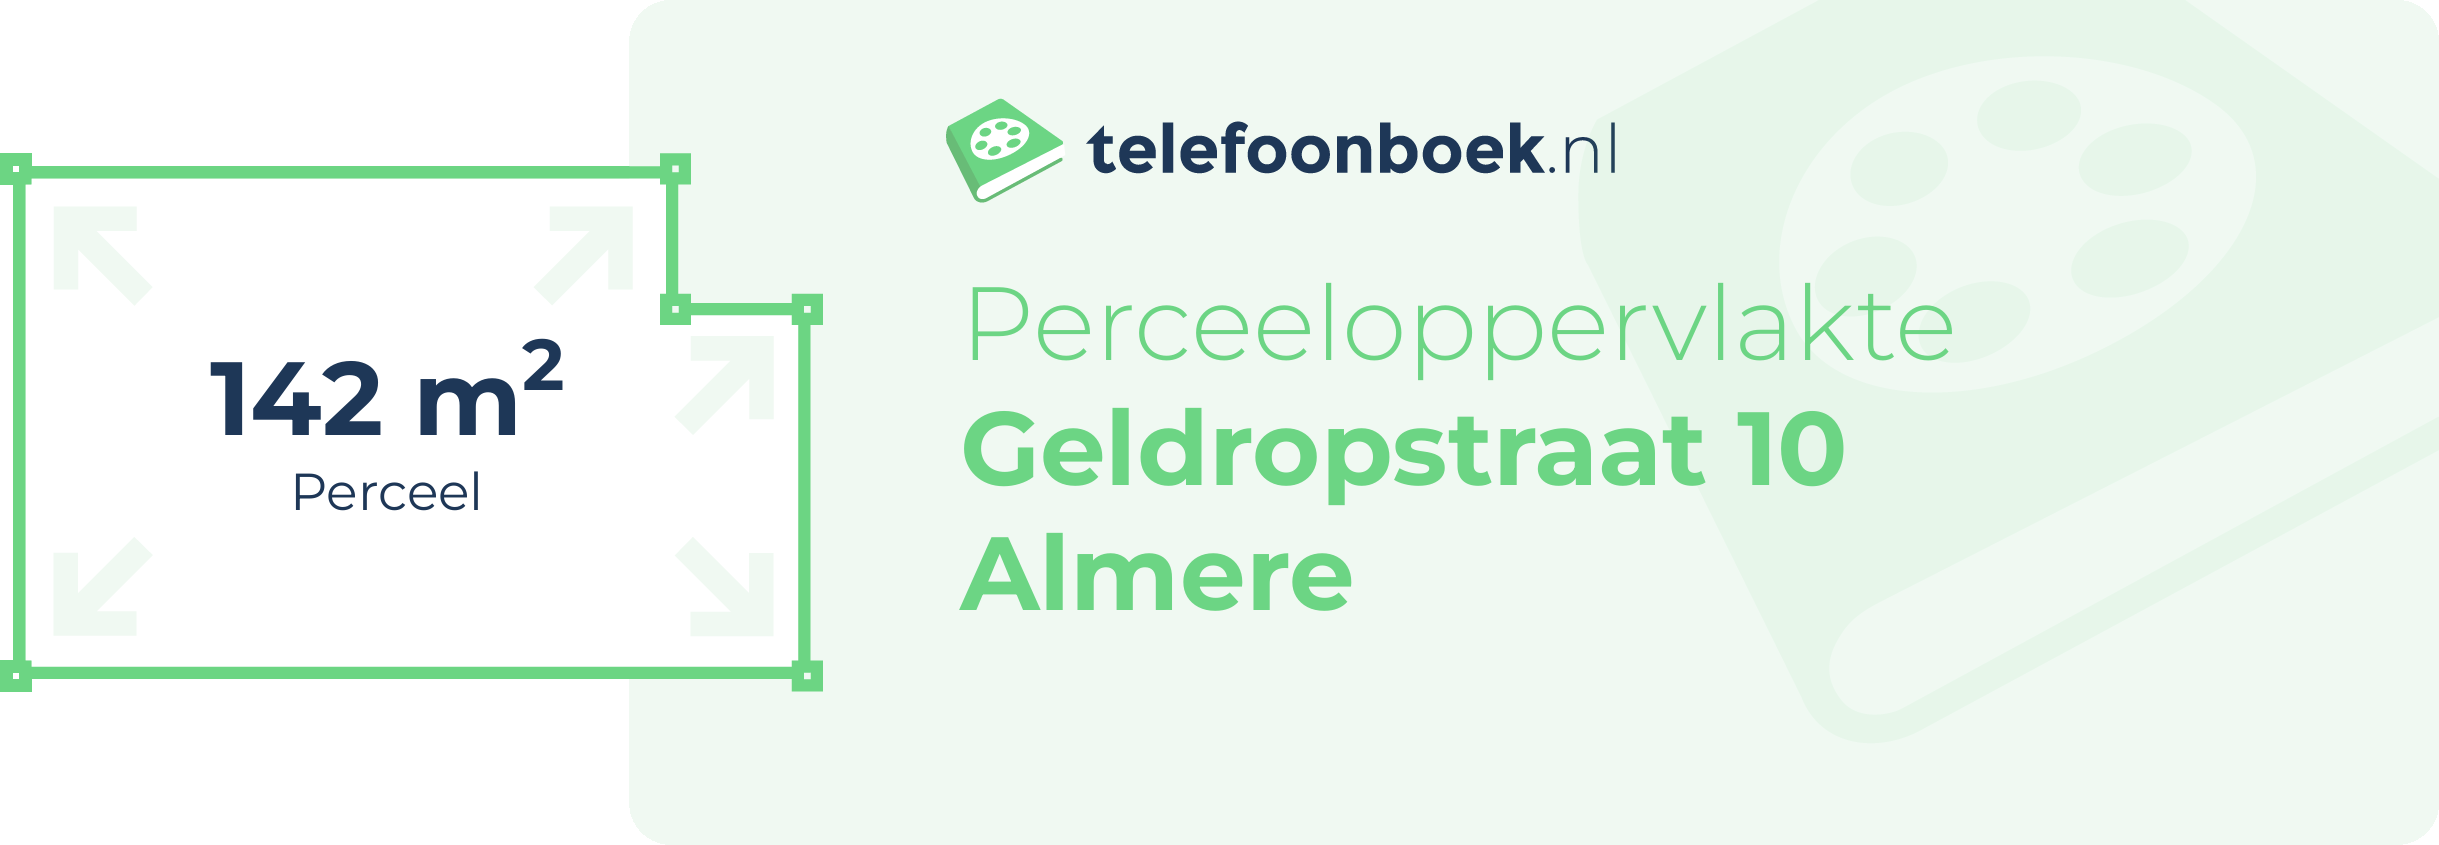 Perceeloppervlakte Geldropstraat 10 Almere